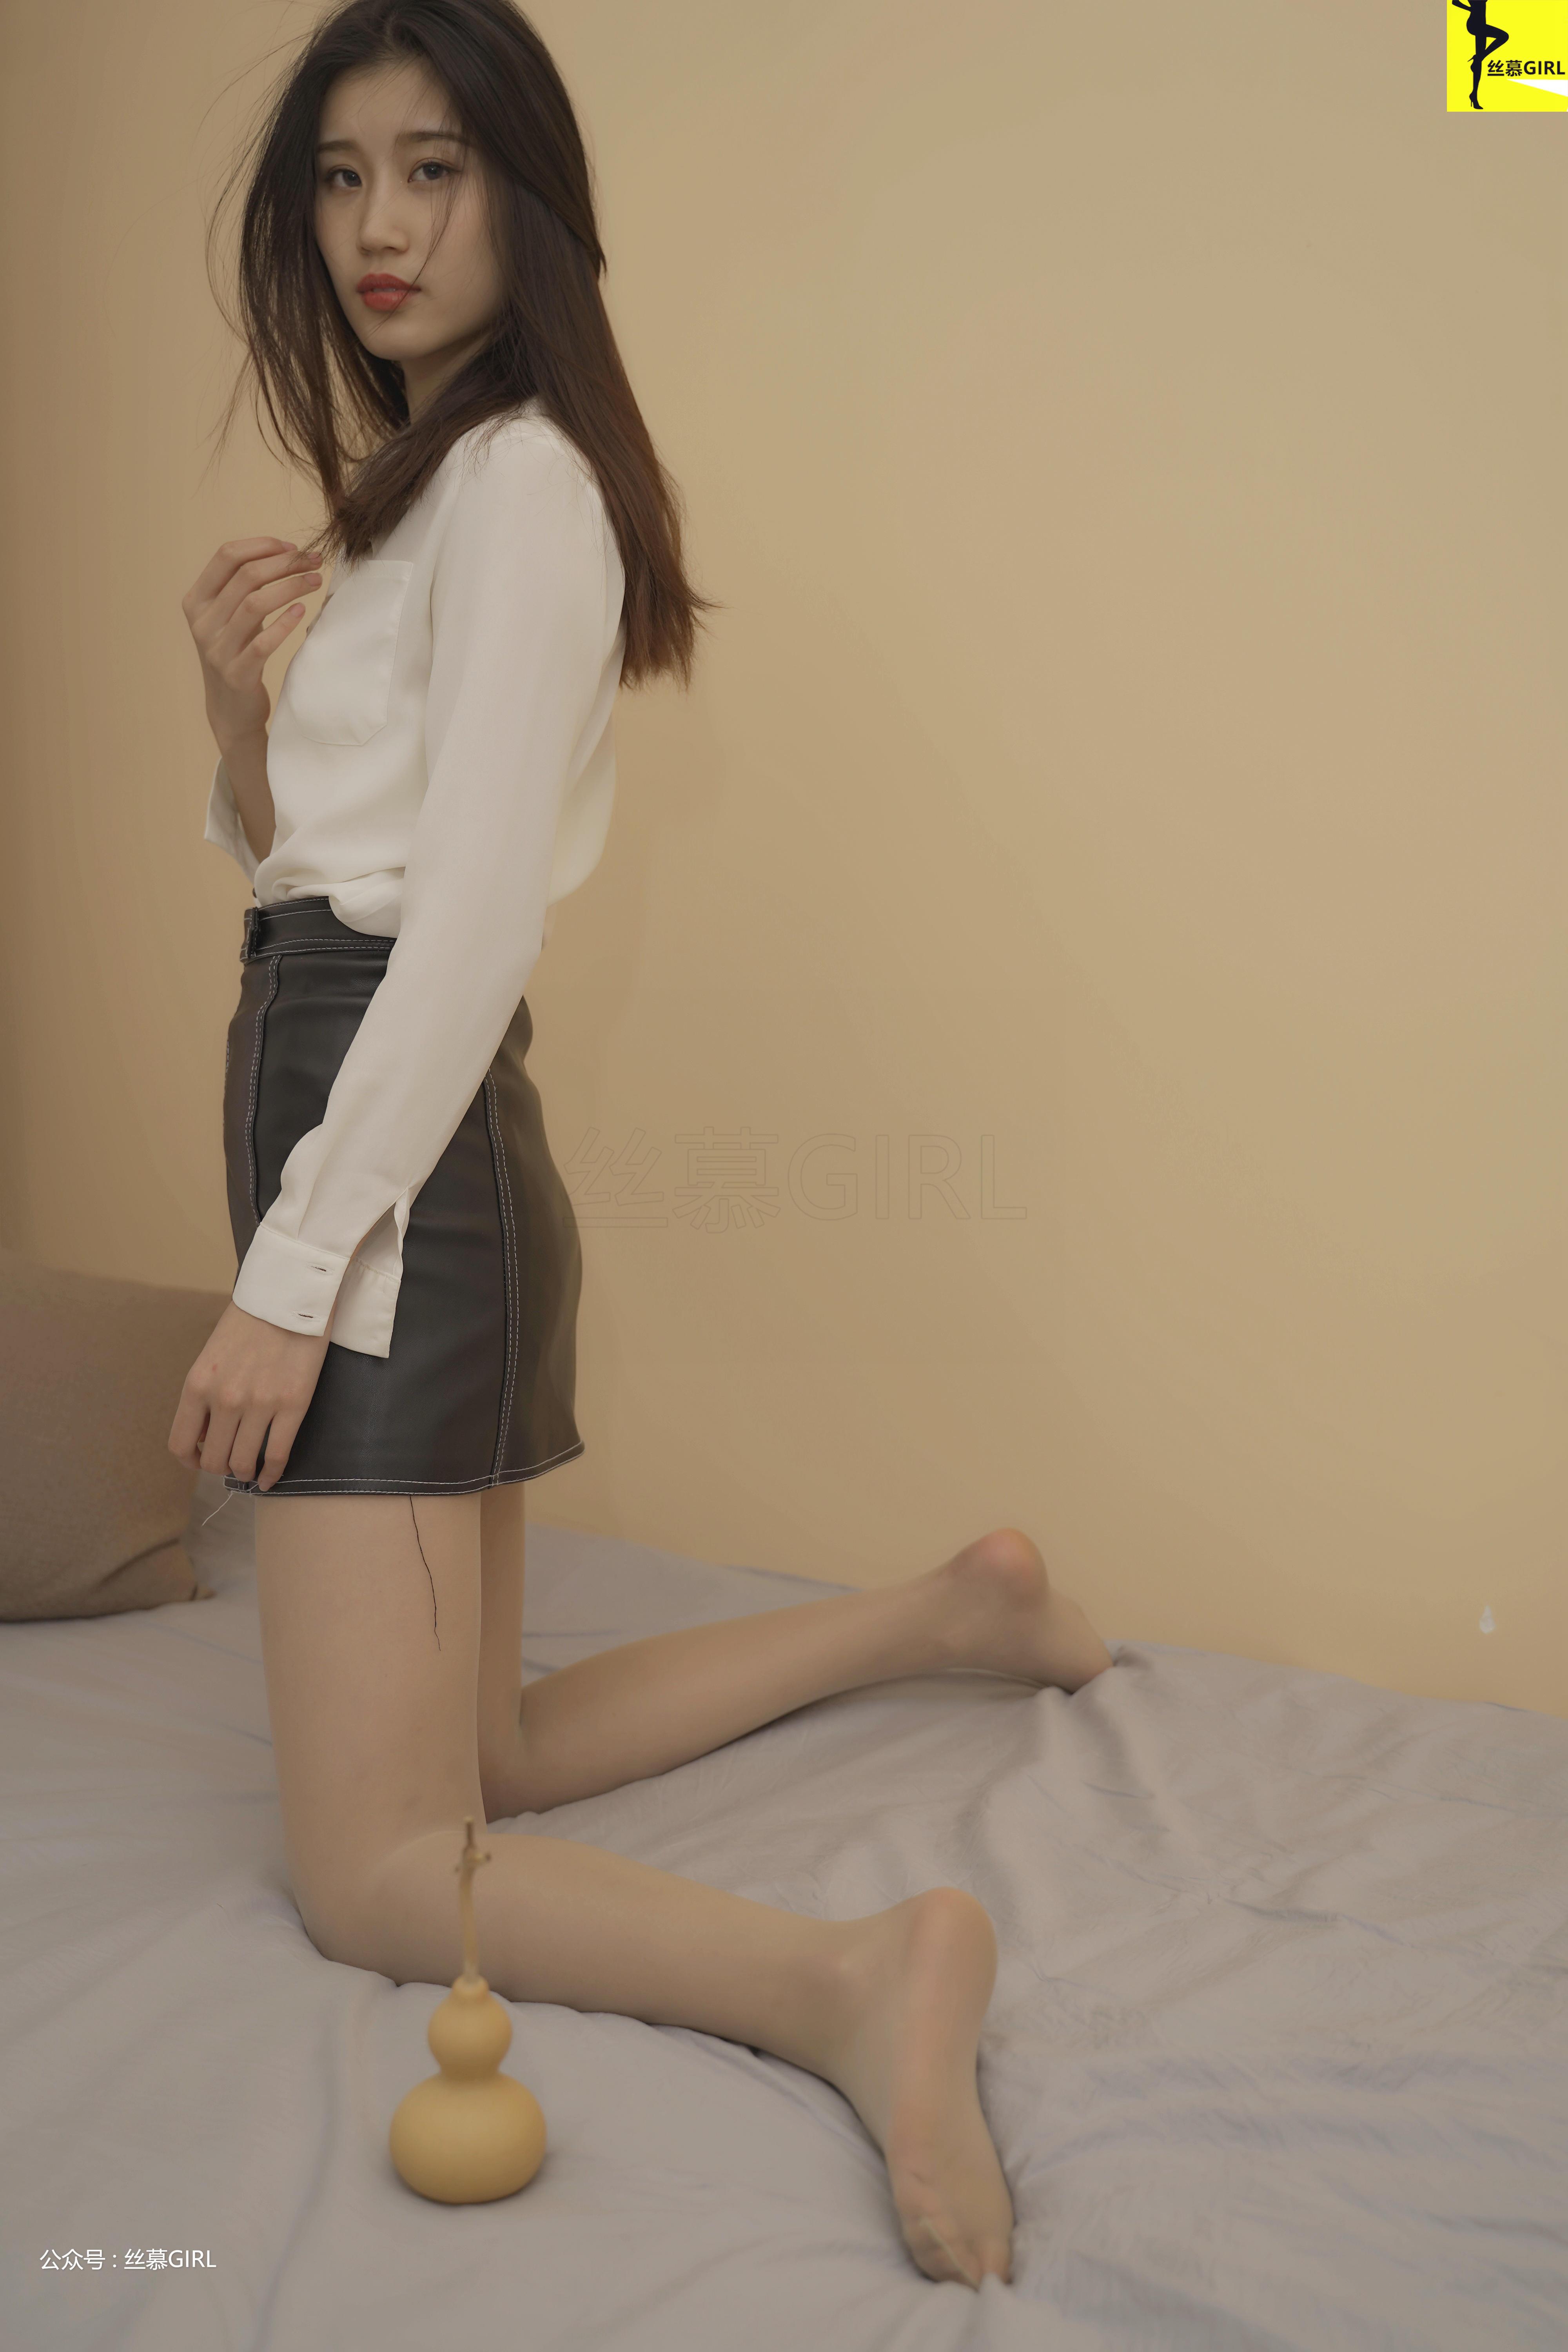 [丝慕GIRL]NO.035 《赏丝悦目》 悦悦 白色透视衬衫与黑色短裙加肉丝美腿性感写真集,29